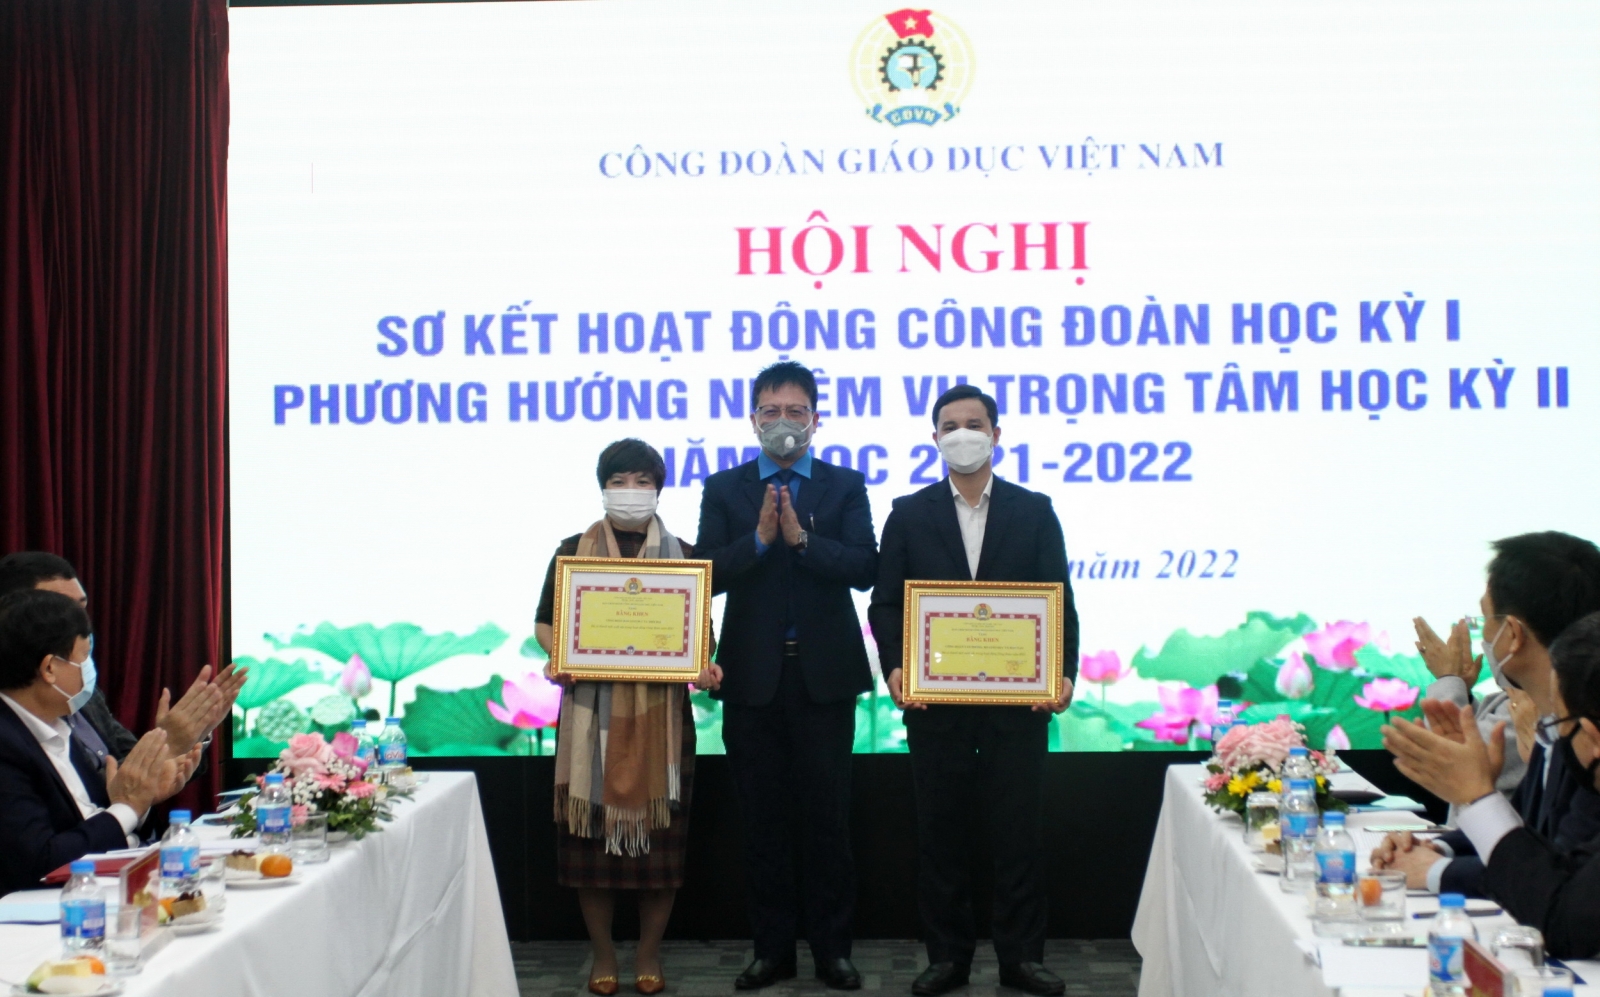 Công đoàn Giáo dục Việt Nam tổ chức Hội nghị Sơ kết học kỳ I năm học 2022-2022, triển khai nhiệm vụ học kỳ II năm học 2021 - 2022